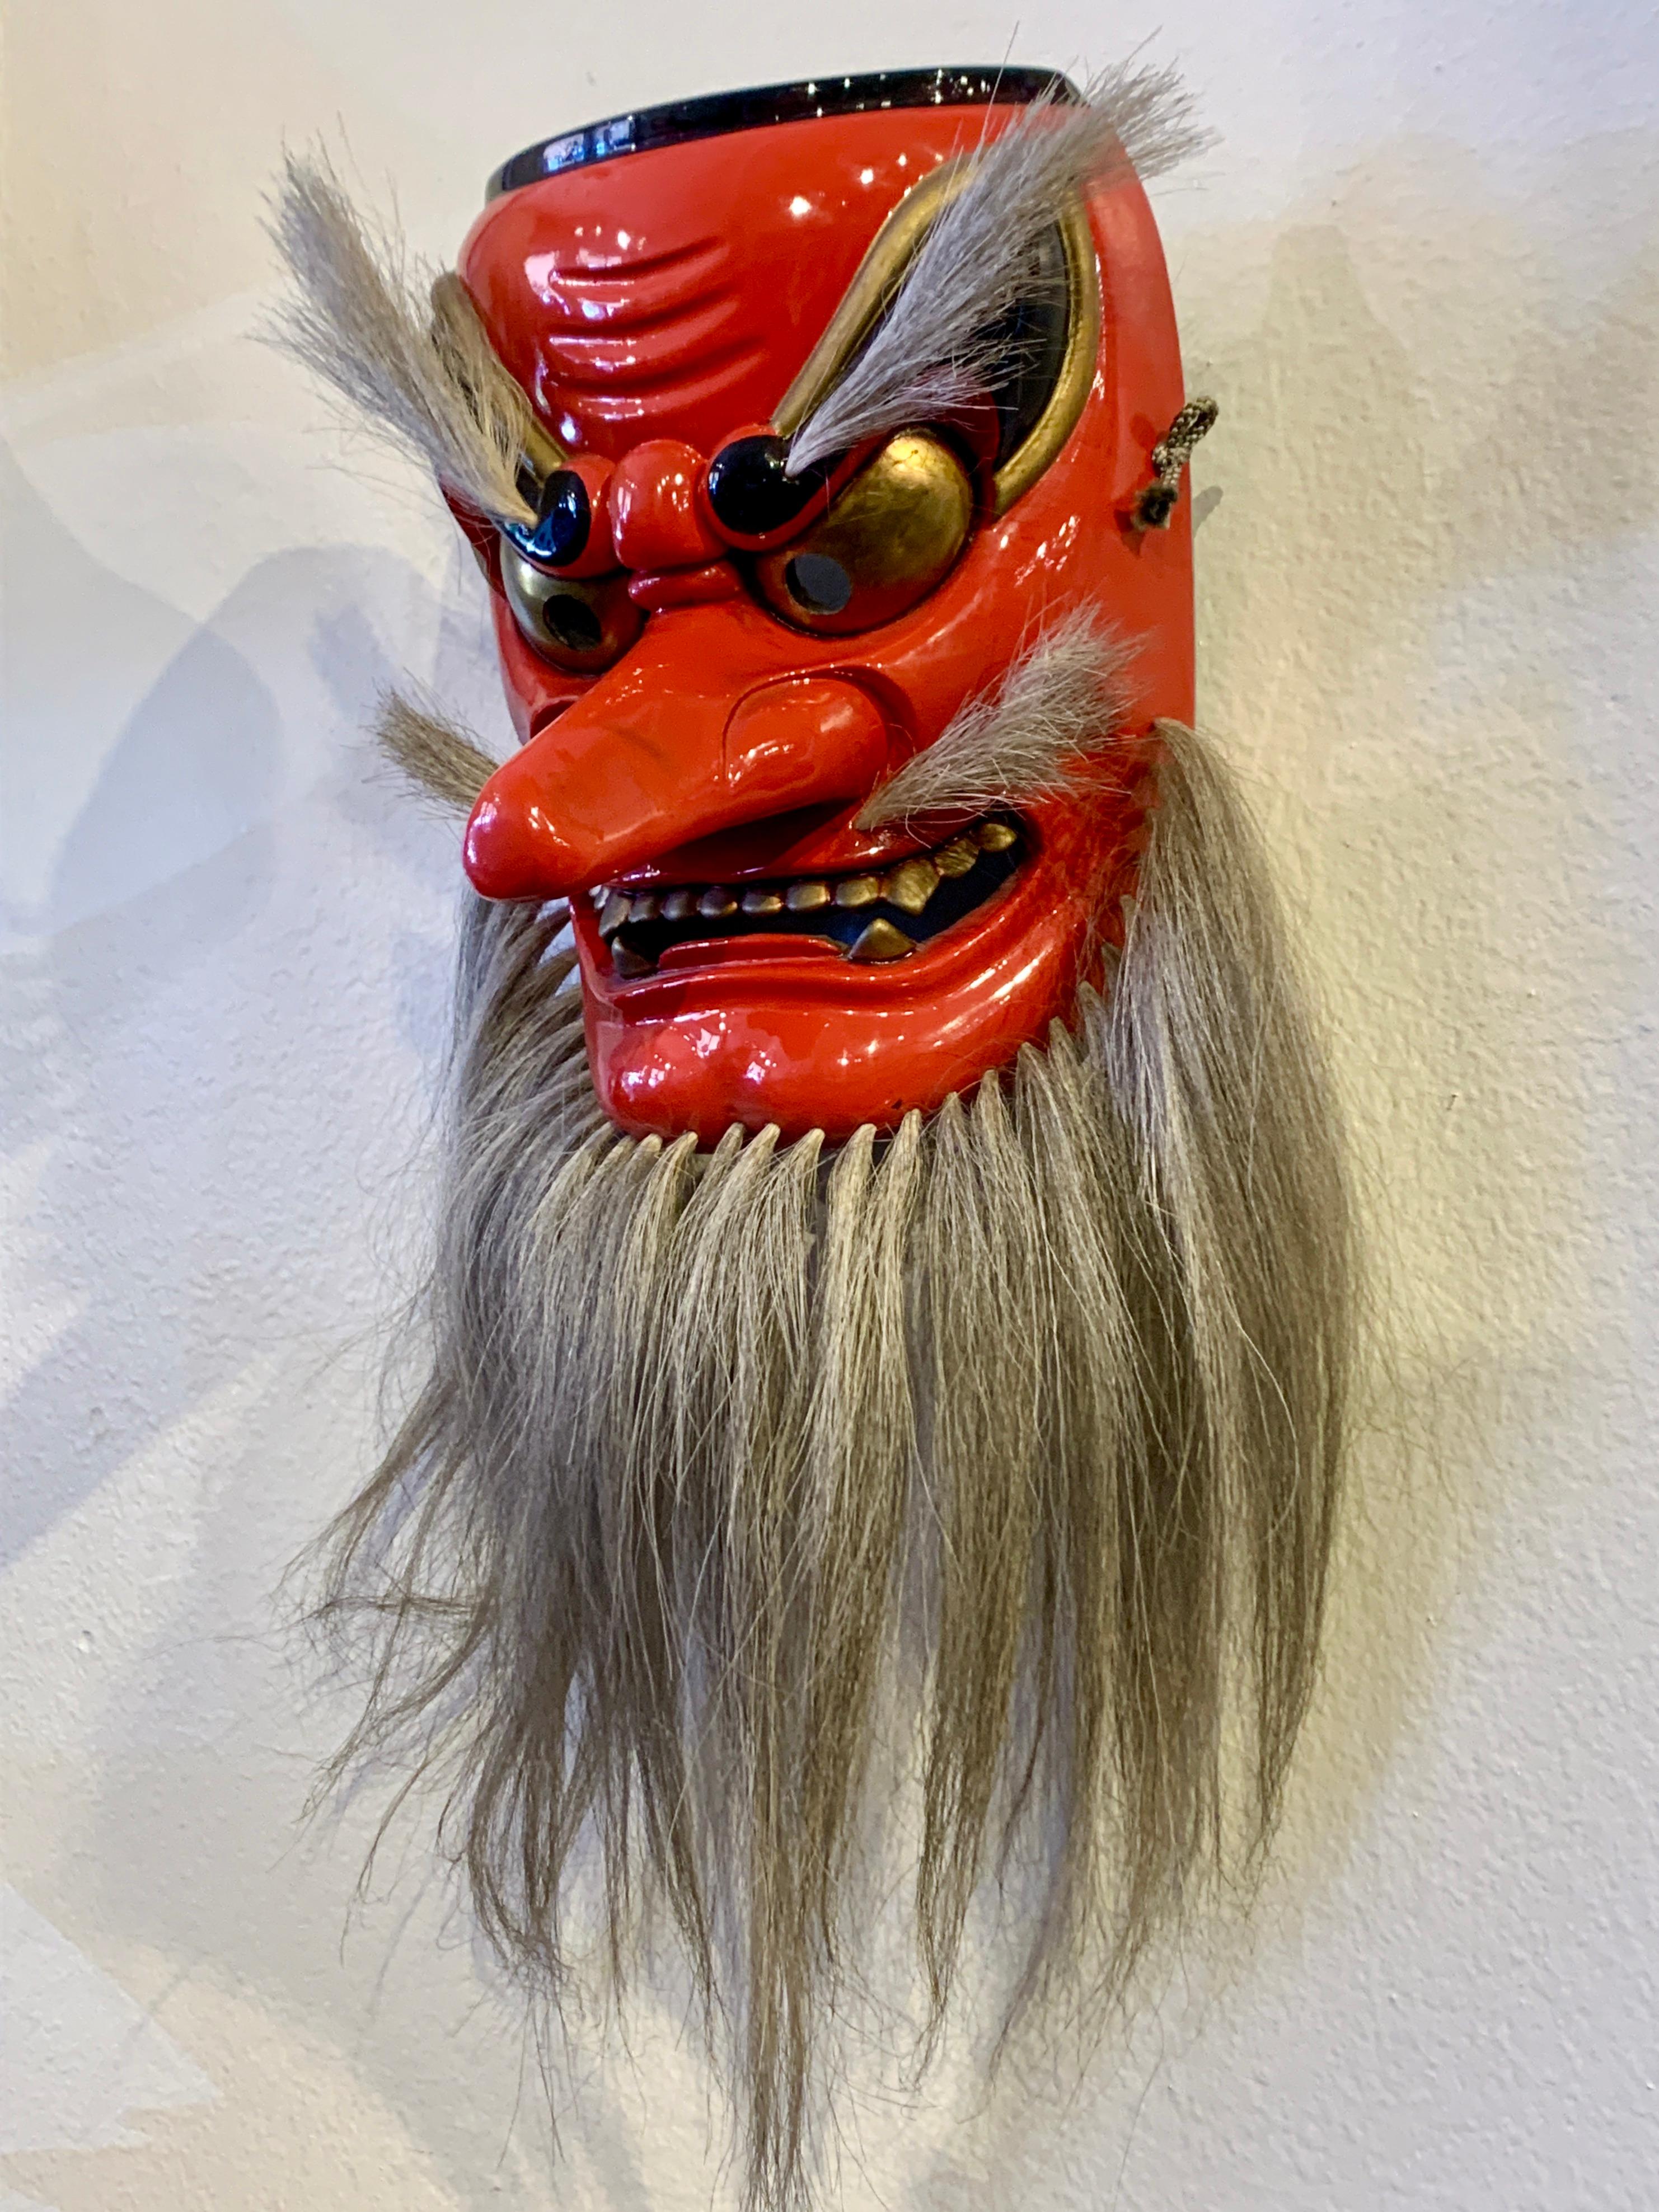 Eine kühne und kraftvolle Kagura-Maske der Shinto-Gottheit Sarutahiko Okami von Kiyomi Yokota, Showa- oder Heisei-Ära, spätes 20. Jahrhundert, Japan.

Die Maske stellt die japanische Shinto-Gottheit Sarutahiko Okami dar, die Shinto-Gottheit der